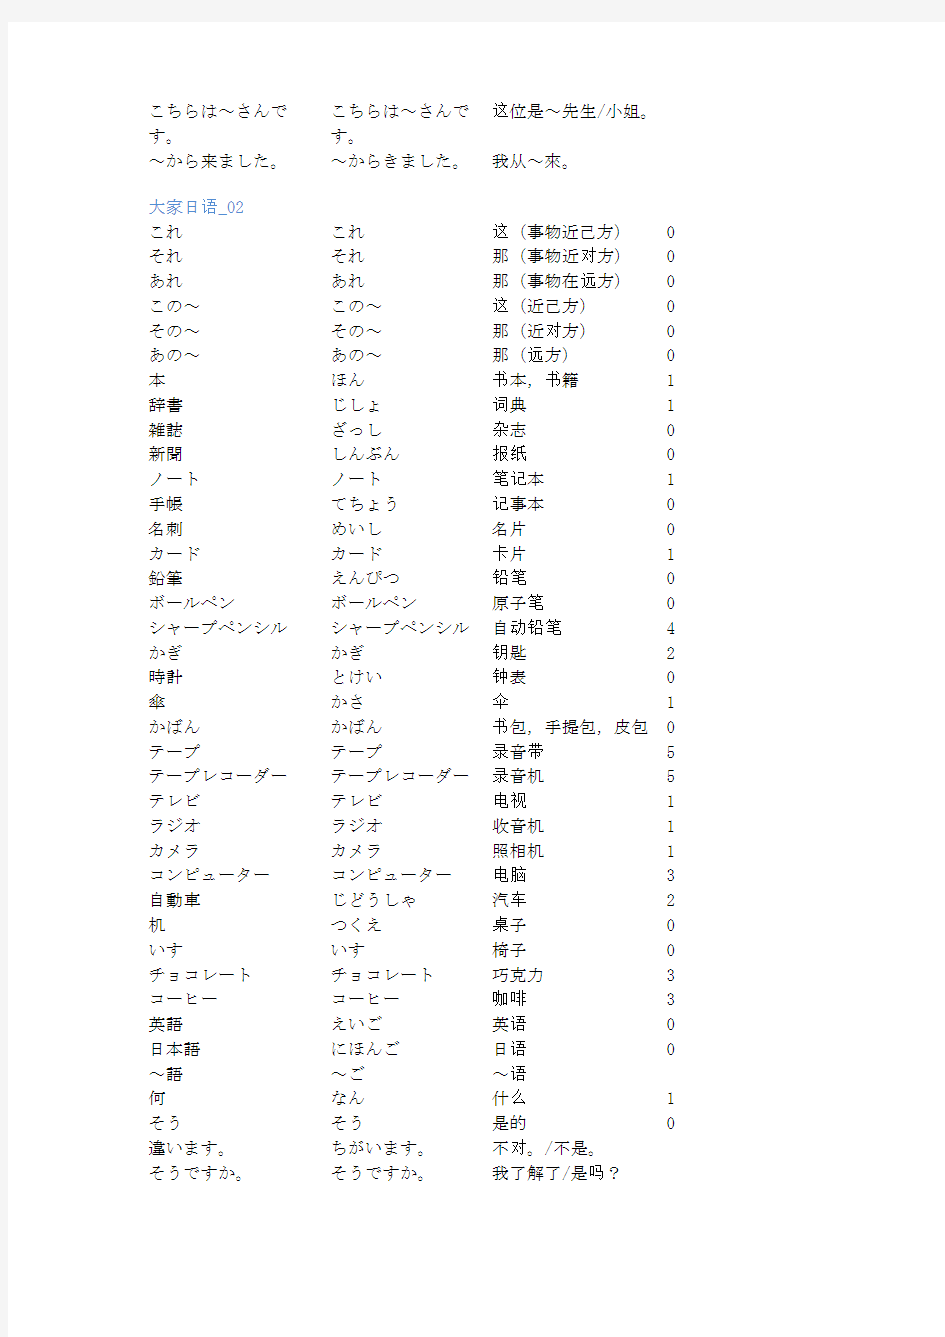 (完整版)大家的日本语单词表